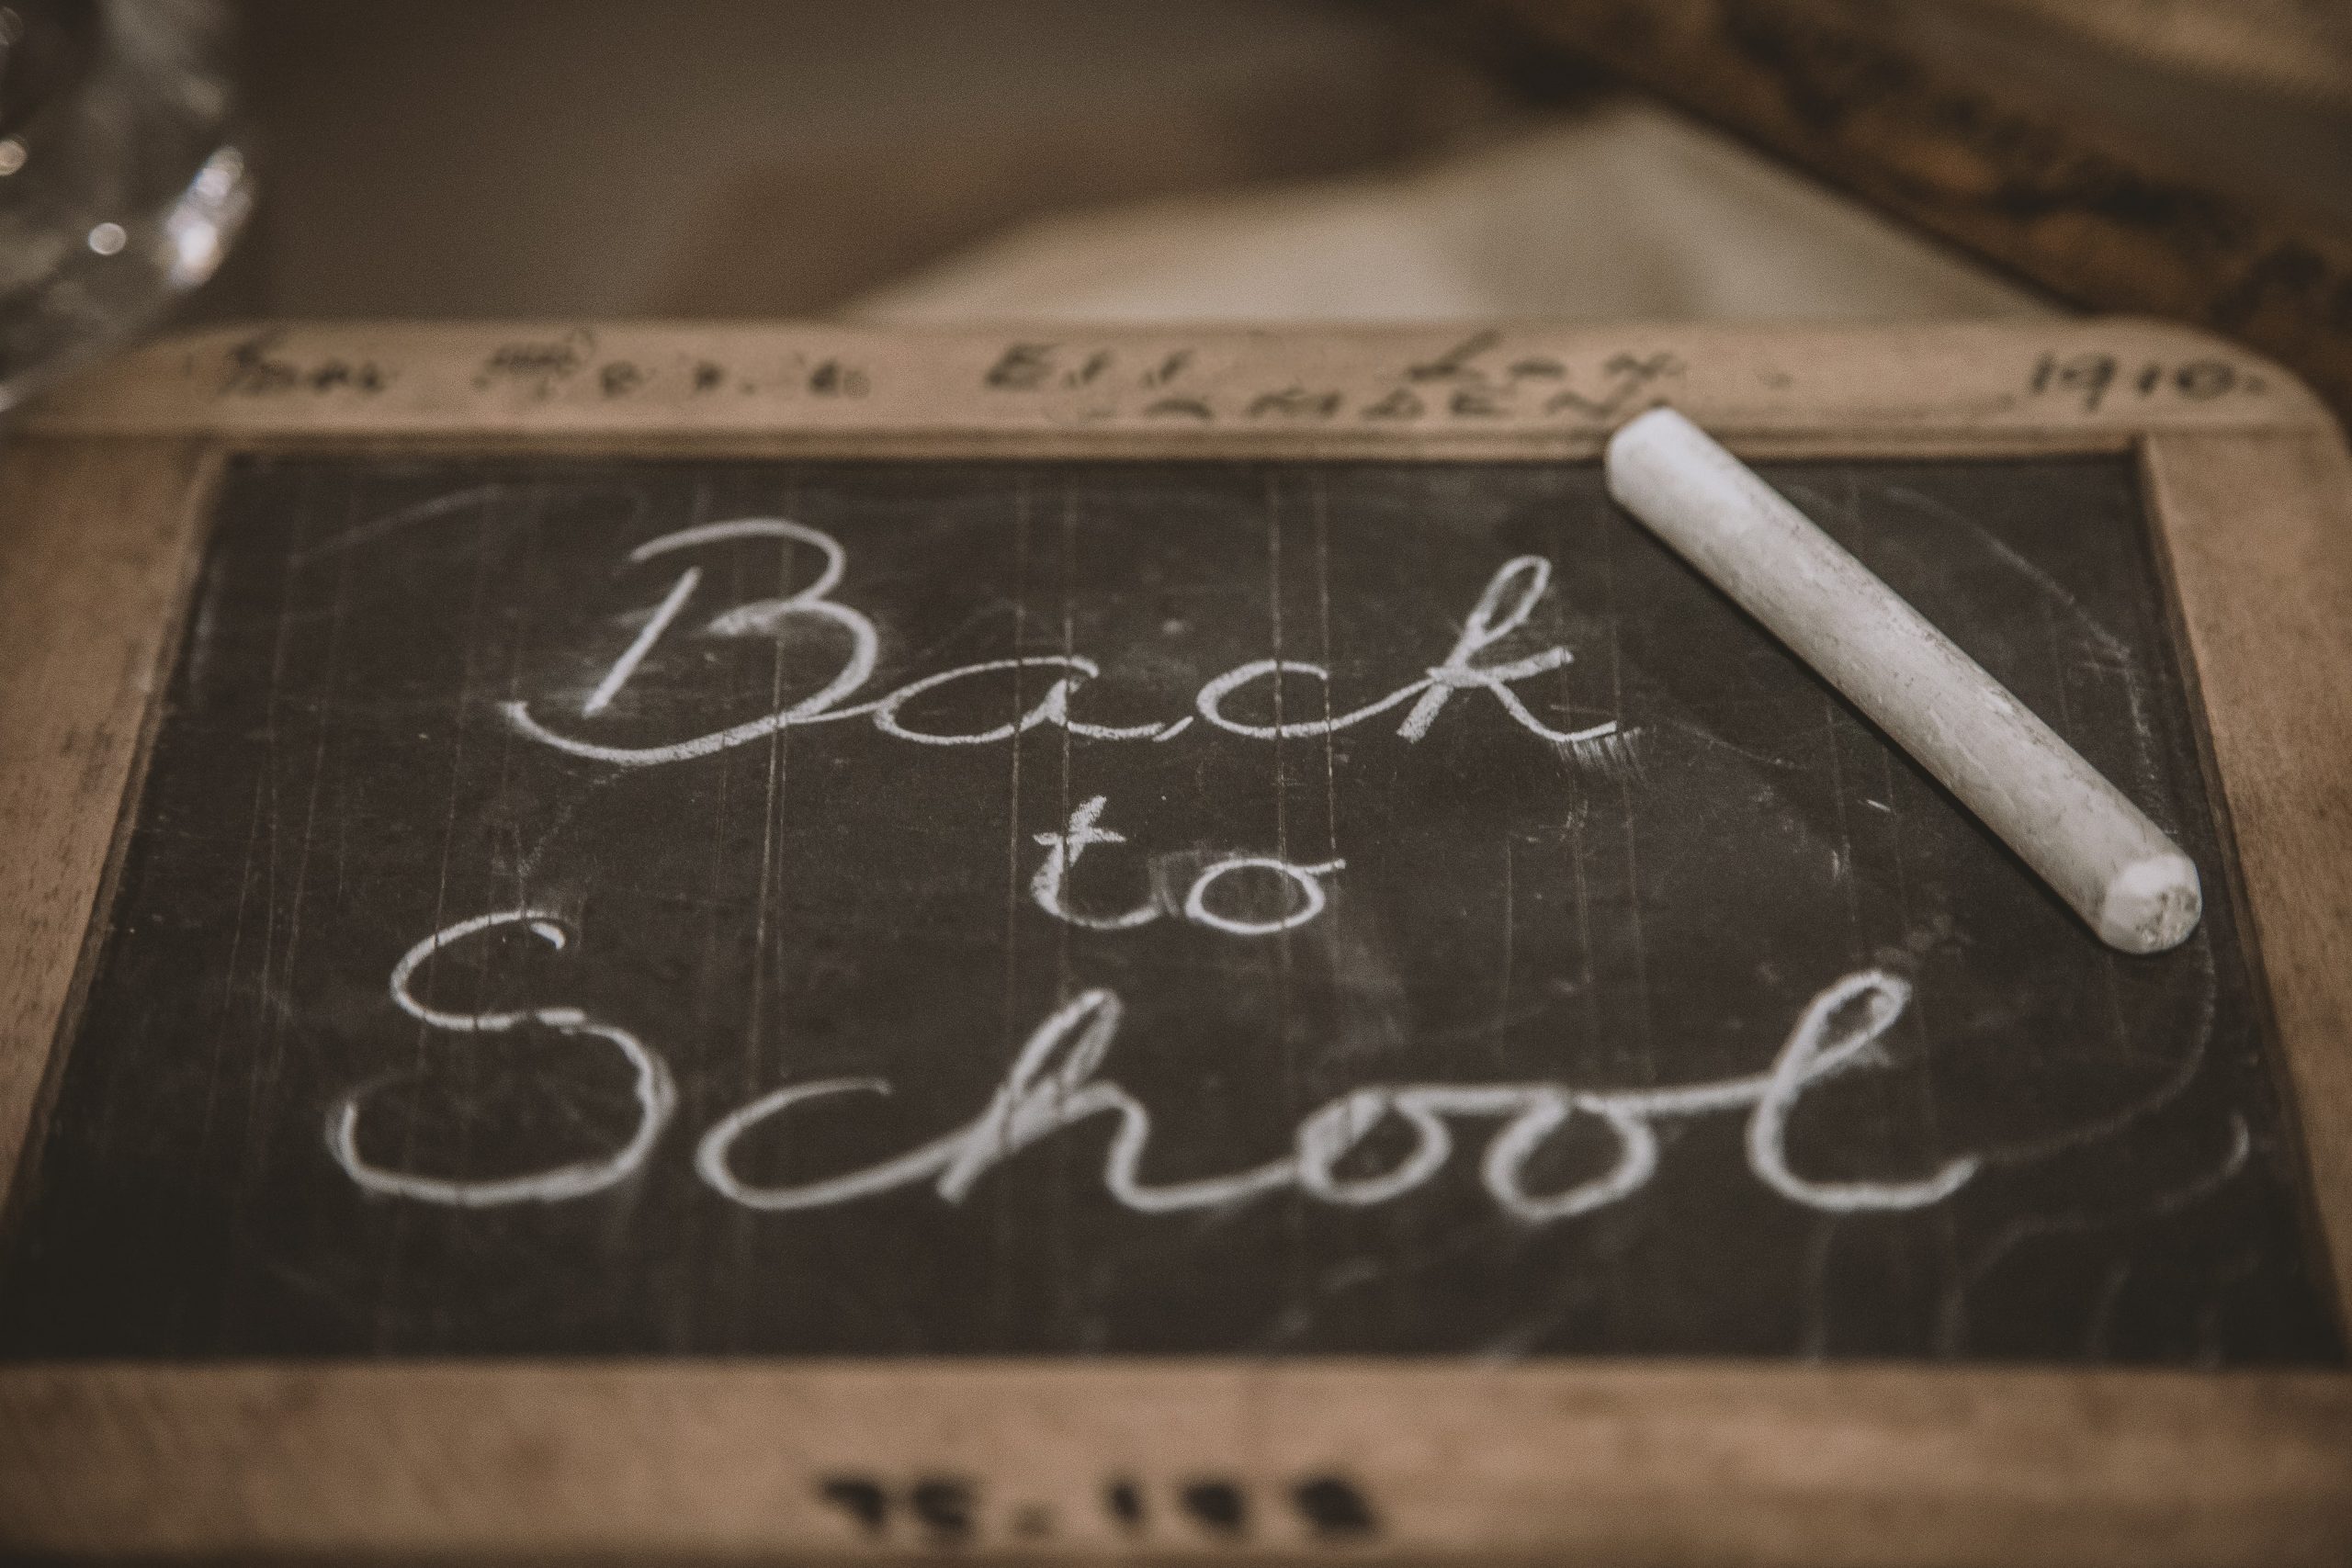 Managing ‘back to school’ anxieties